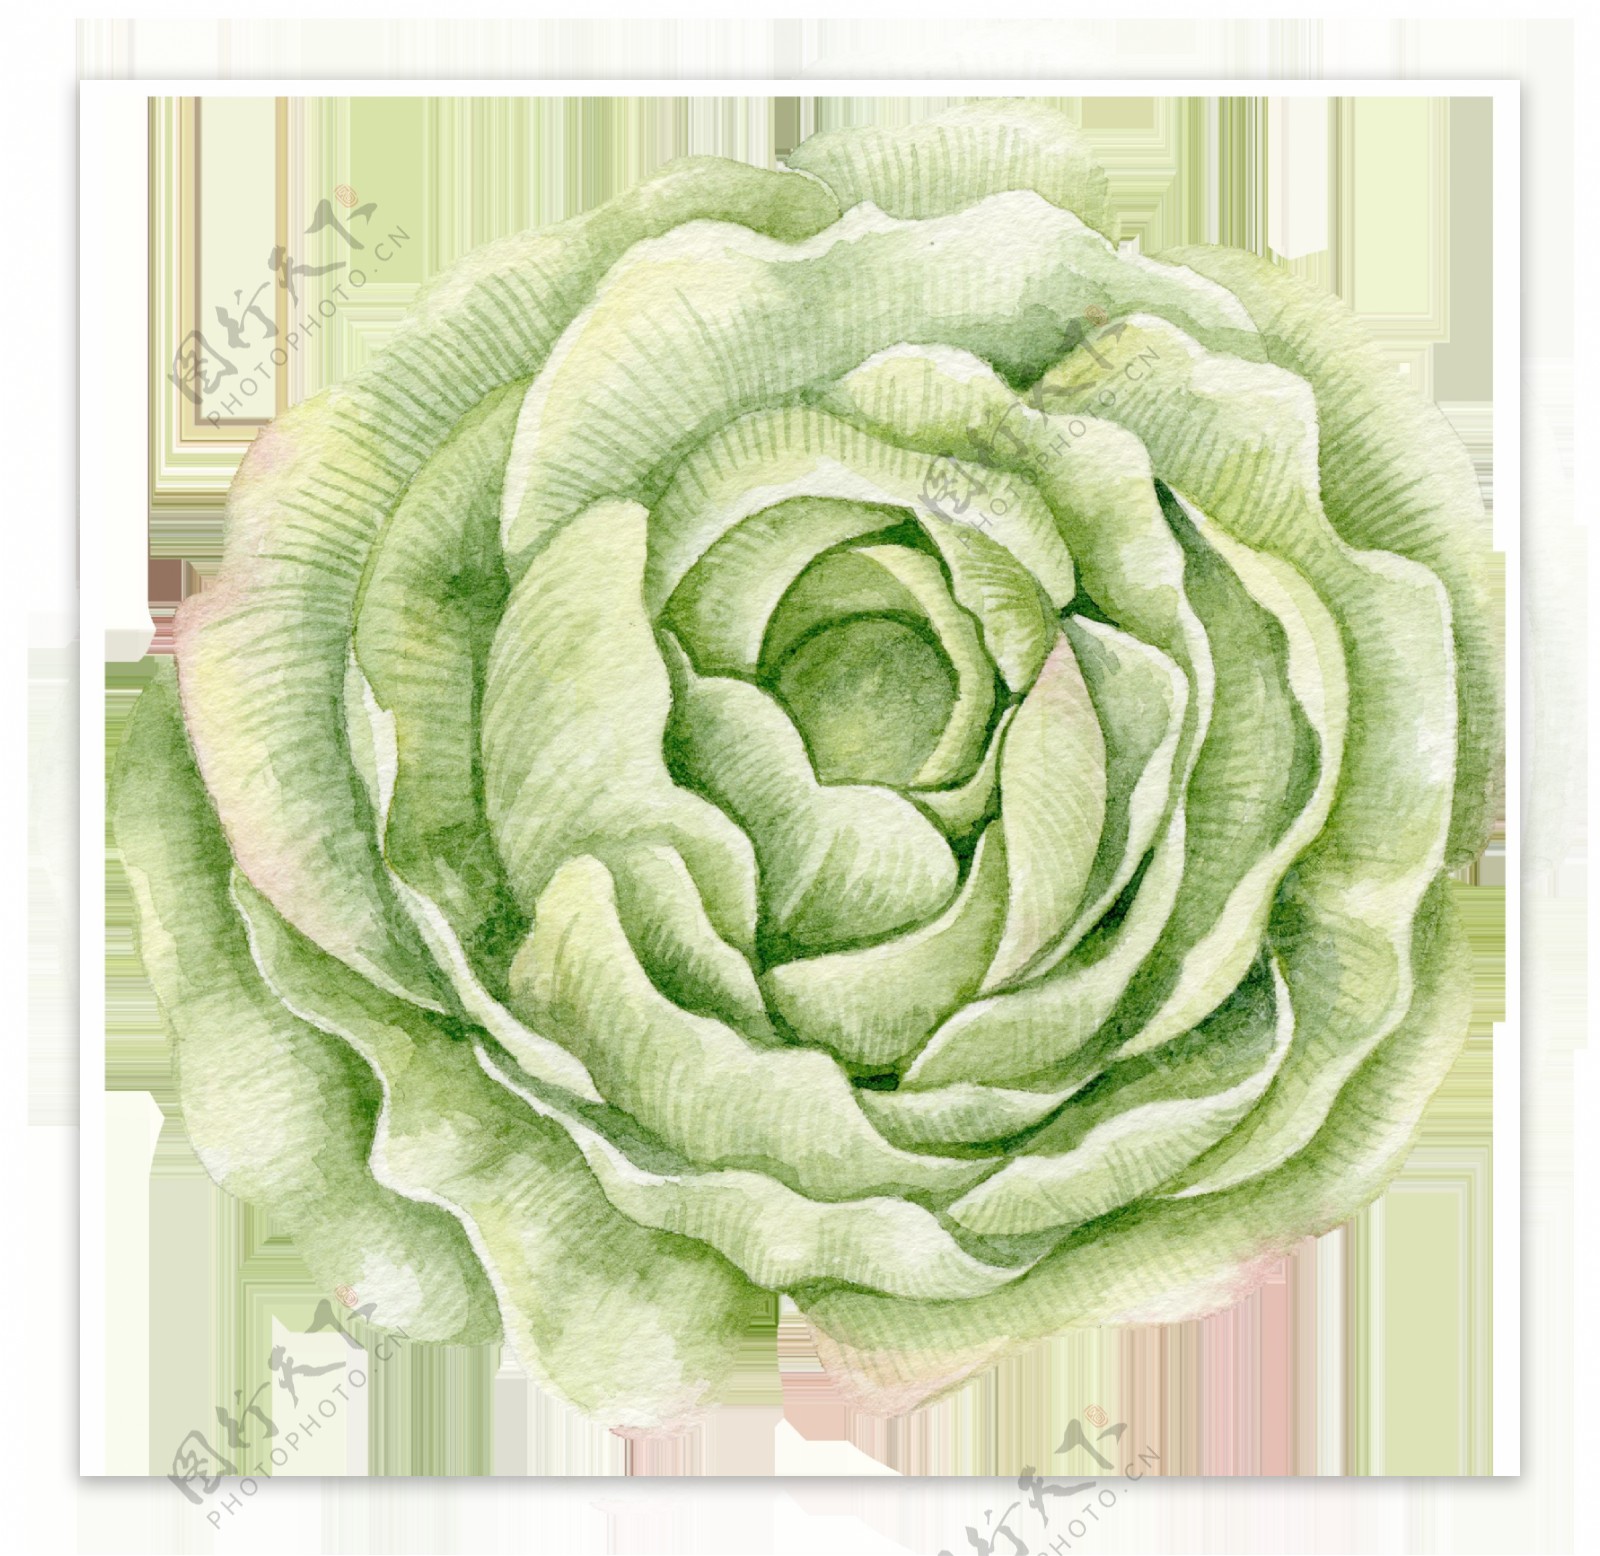 嫩绿色包菜状花朵图片素材